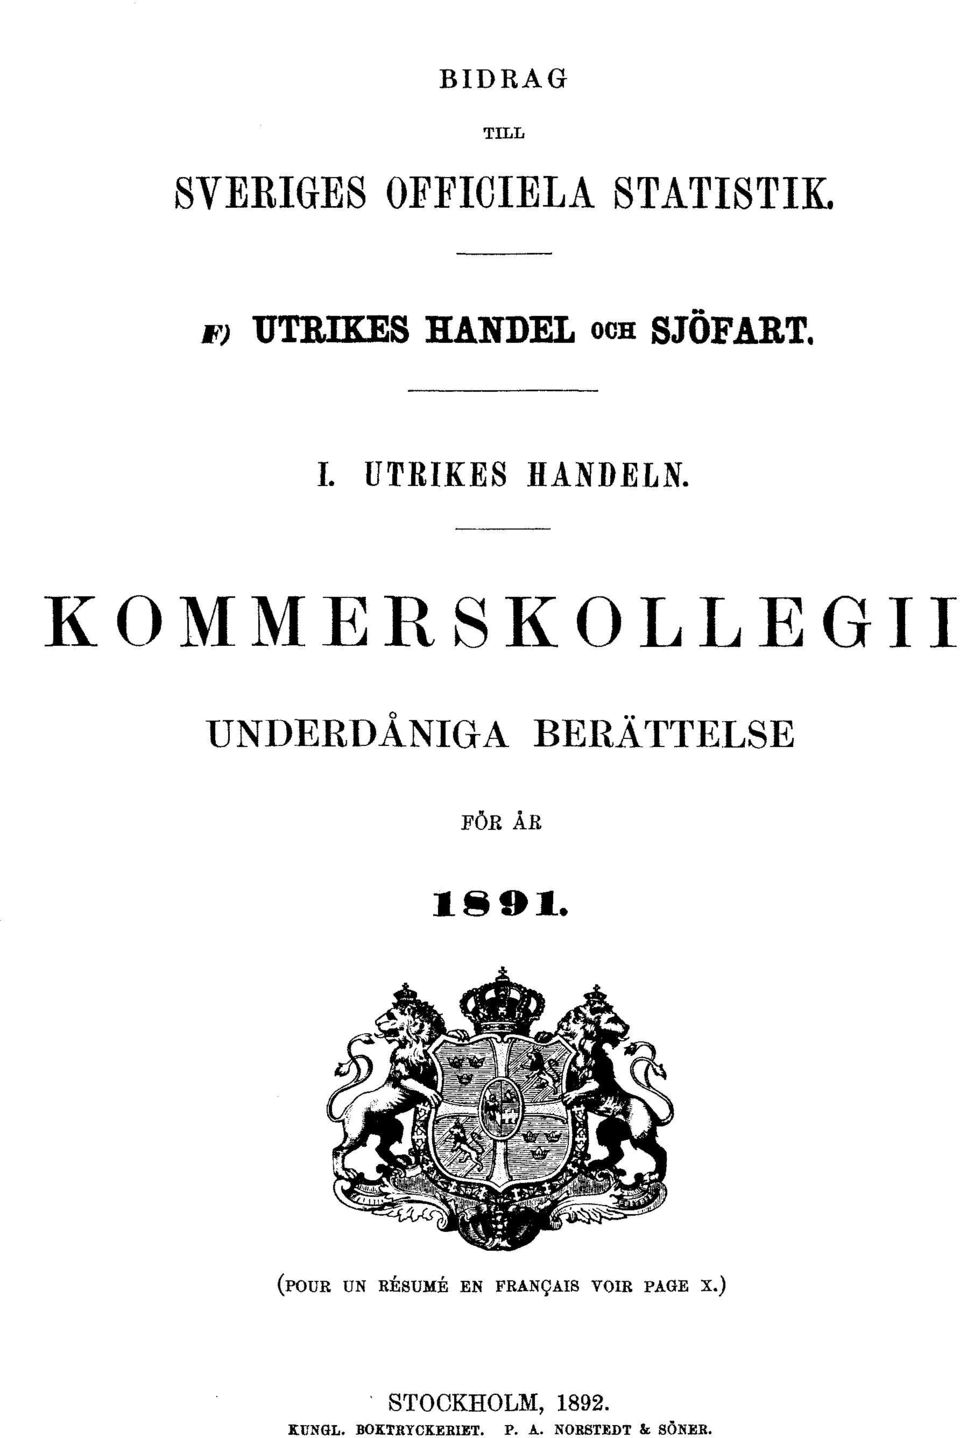 KOMMERSKOLLEGII UNDERDÅNIGA BERÄTTELSE FÖR ÅR 1891.